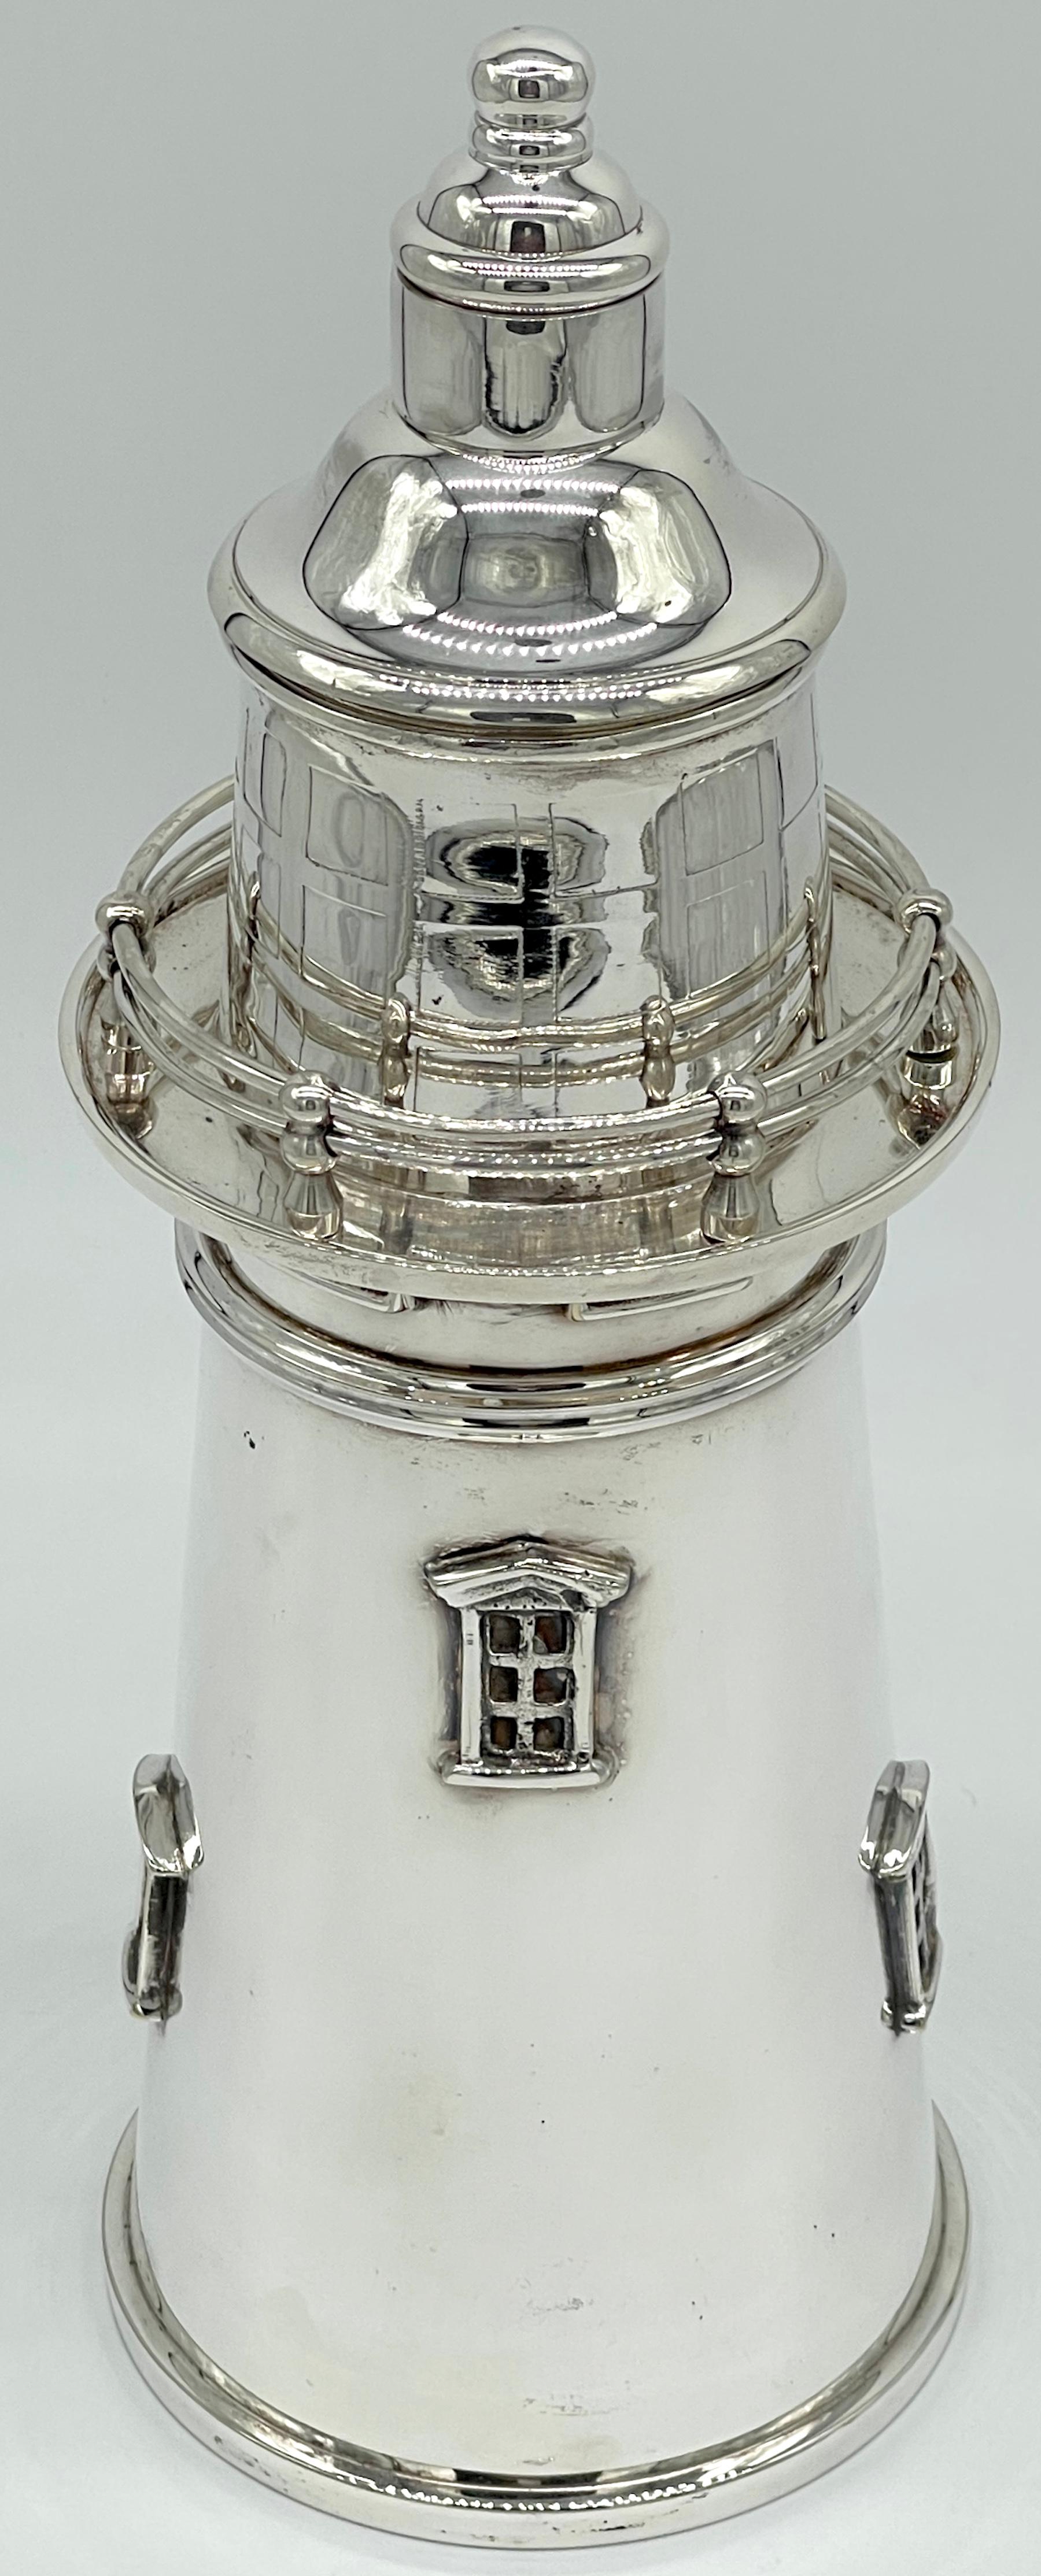 Versilberter Cocktail Shaker in Form eines Leuchtturms im Stil von James Deakin & Sons
England, 20. Jahrhundert 

Ein prächtiger versilberter Cocktail-Shaker in Form eines Leuchtturms, hergestellt im ikonischen Stil von James Deakin & Sons aus dem